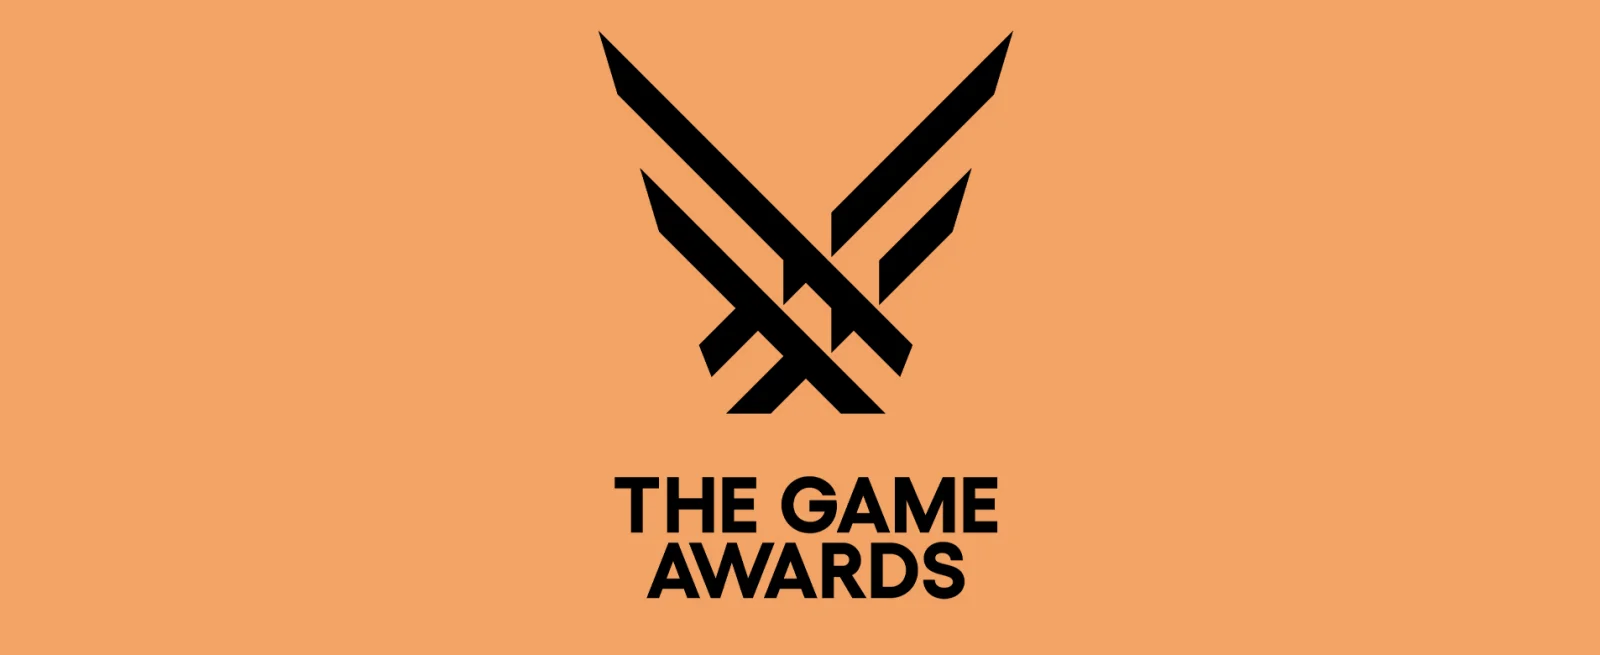 TGA游戏大奖将于本月14日揭晓提名游戏